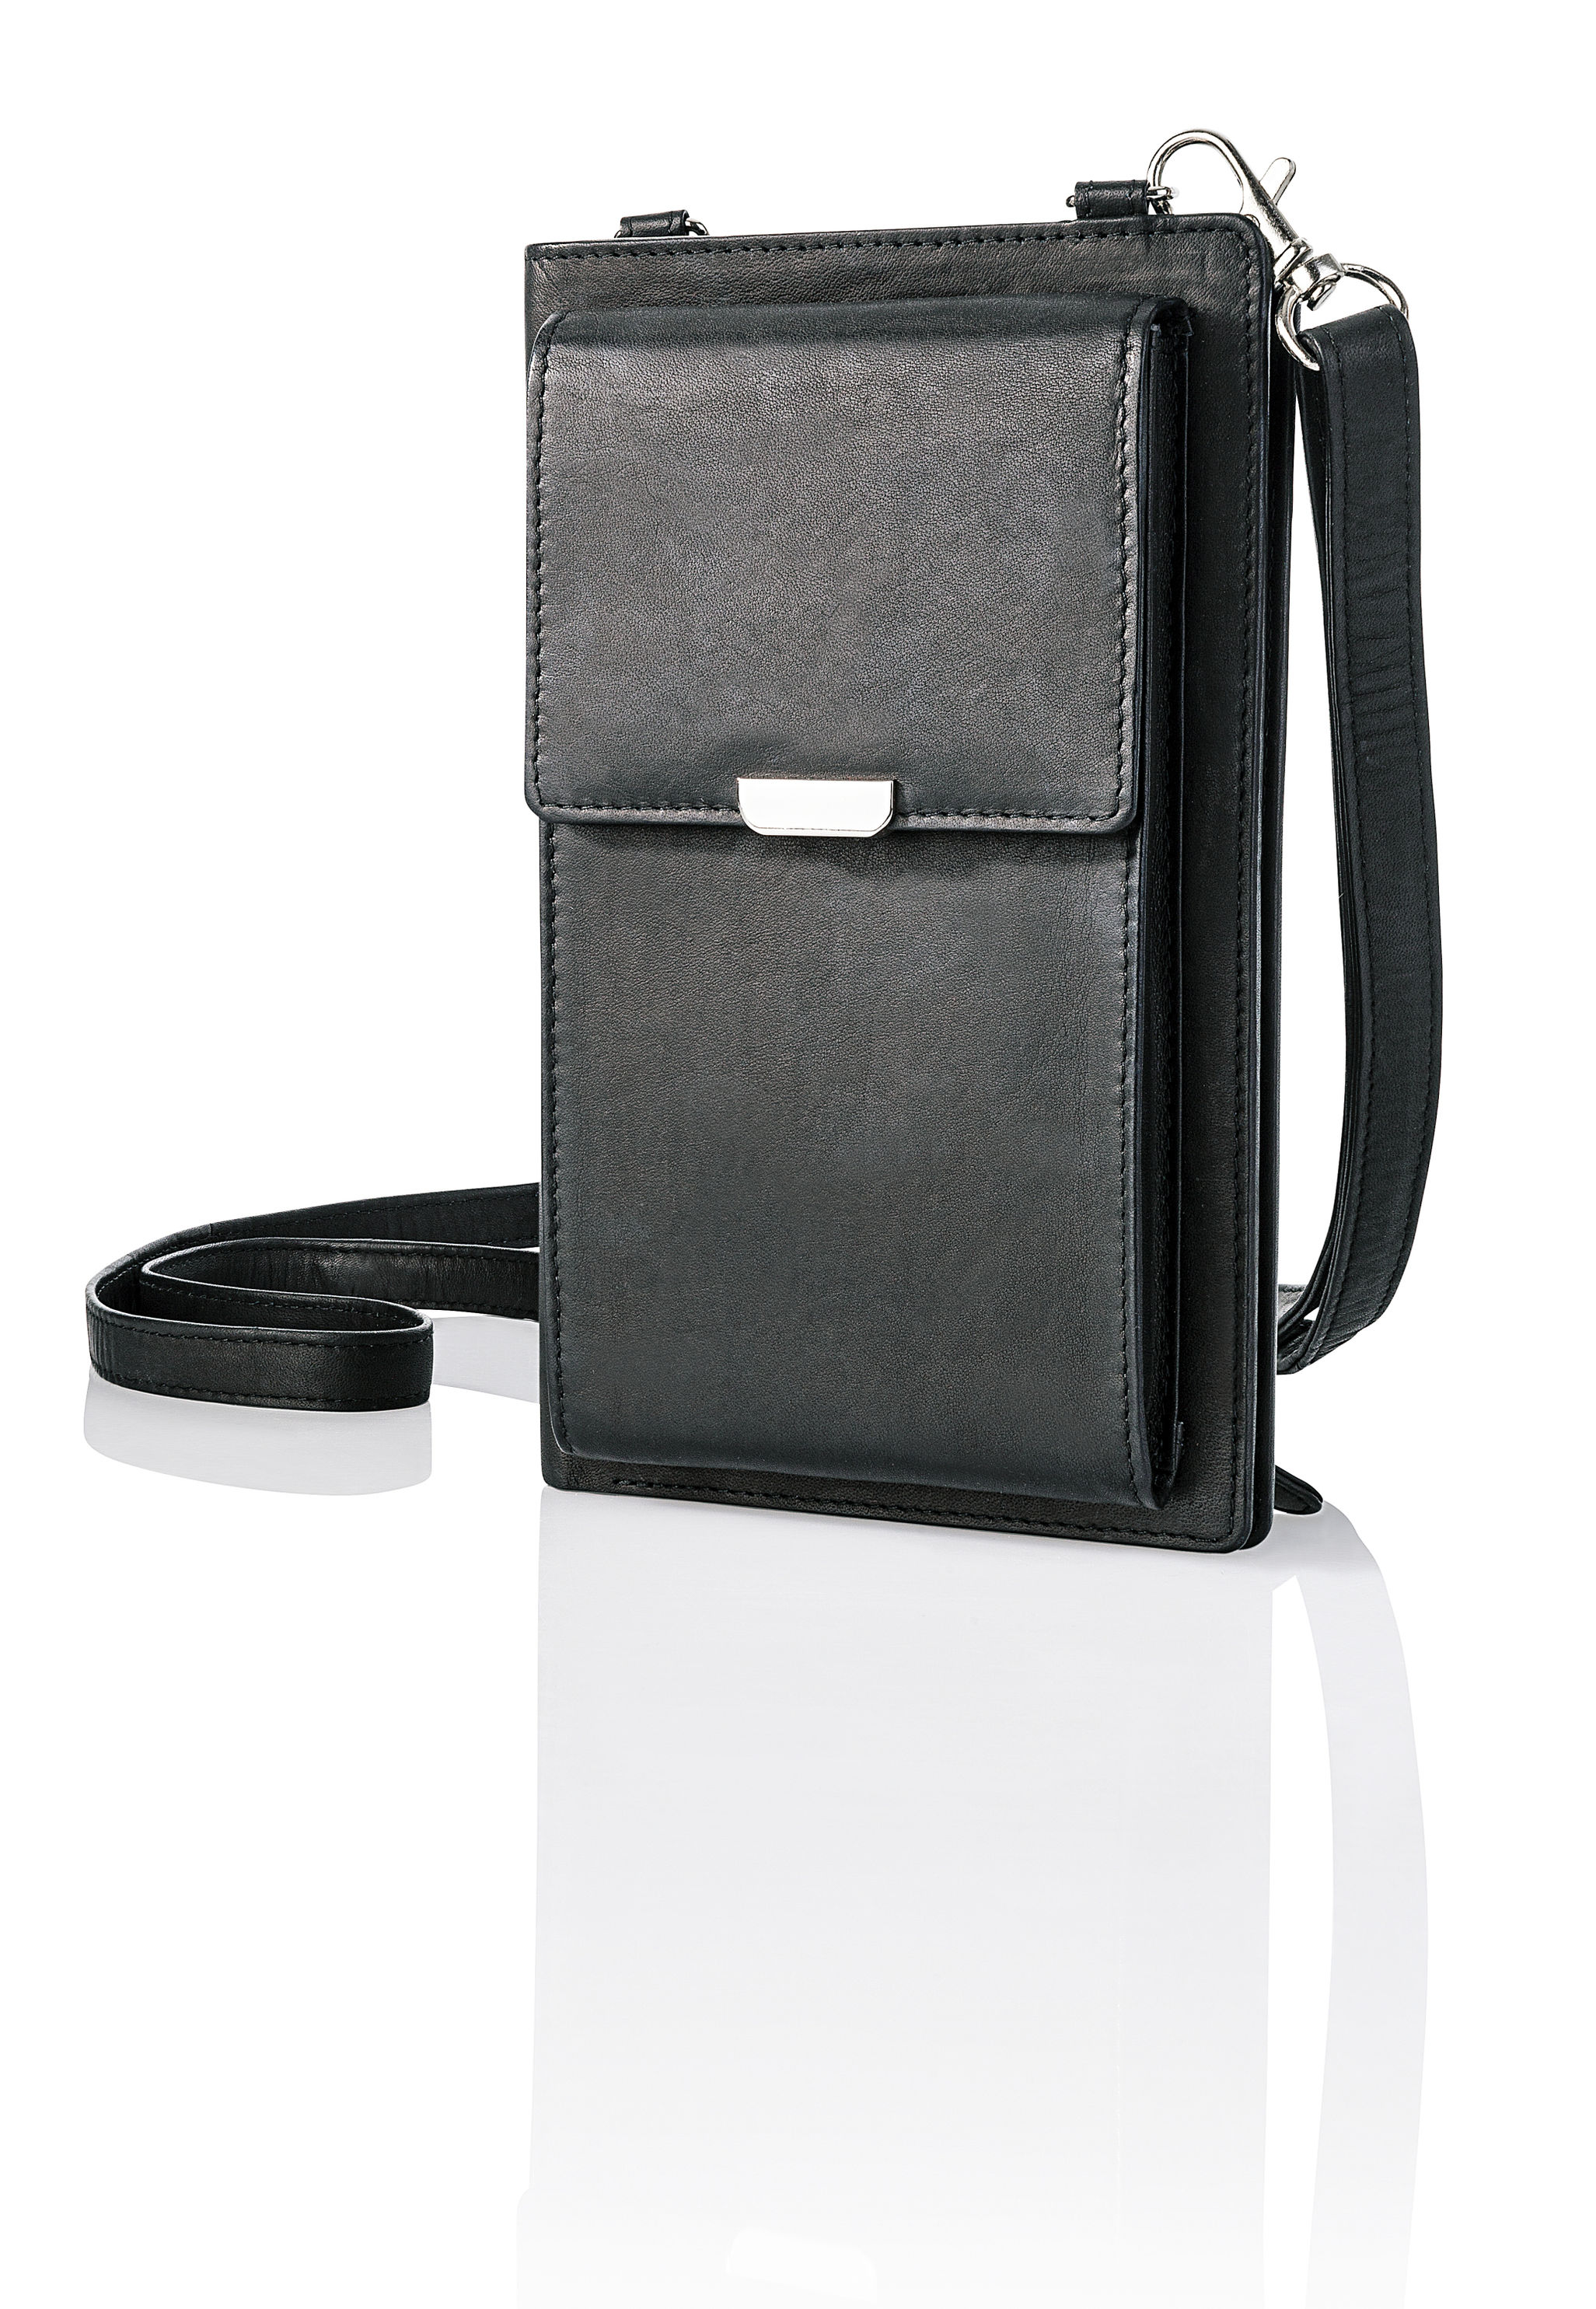 Handy-Umhängetasche mit Kartenfächern, Leder Farbe: schwarz | Weltbild.at